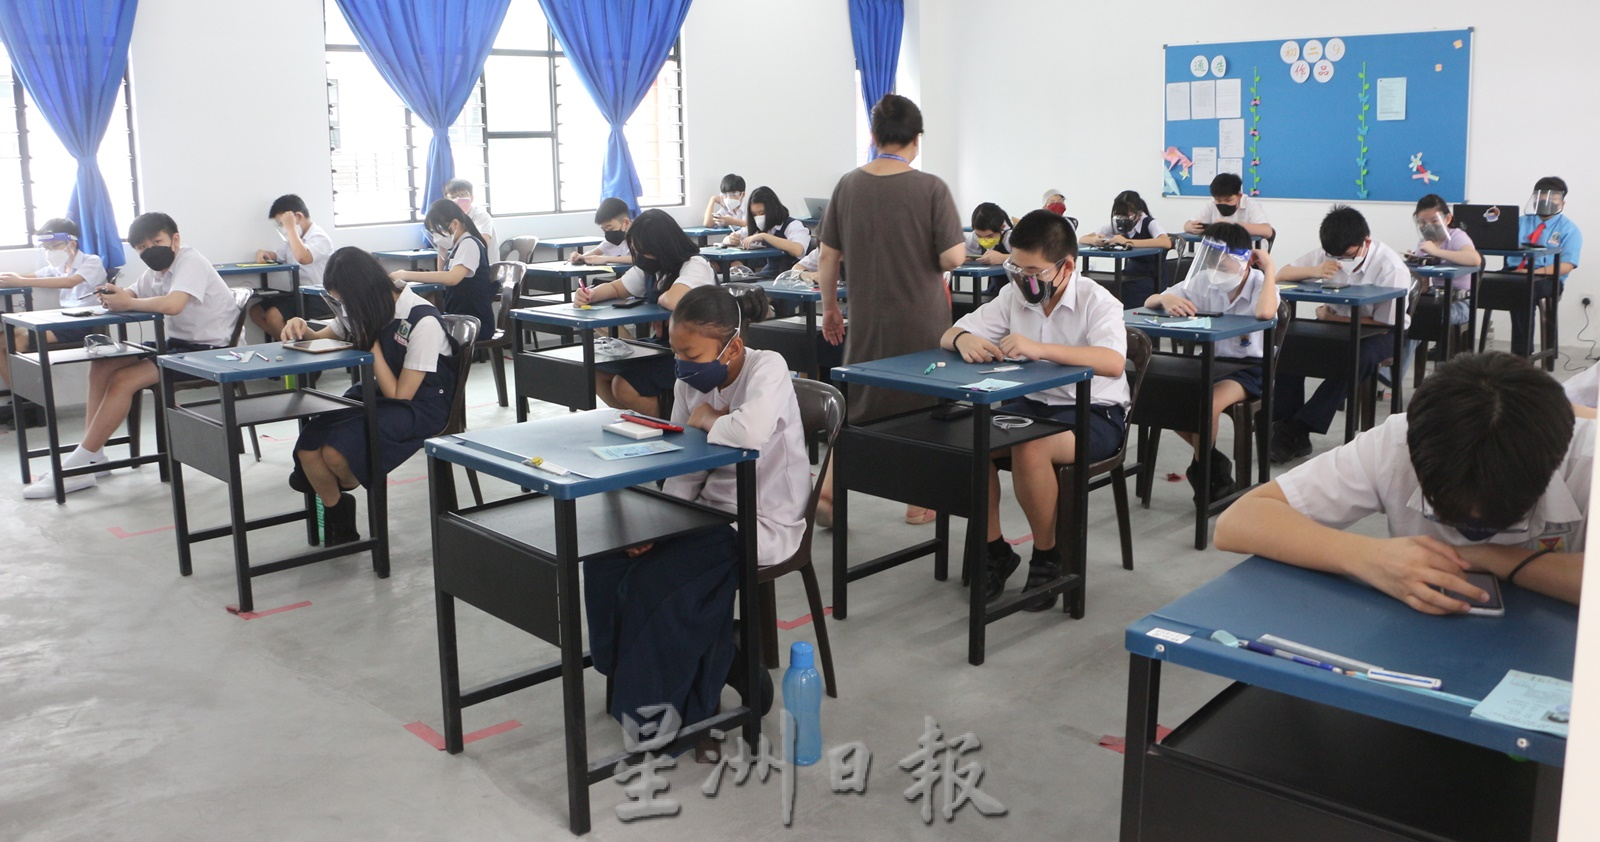 柔：江宁福：吸引更多学生报读  规划三语并重课程与活动